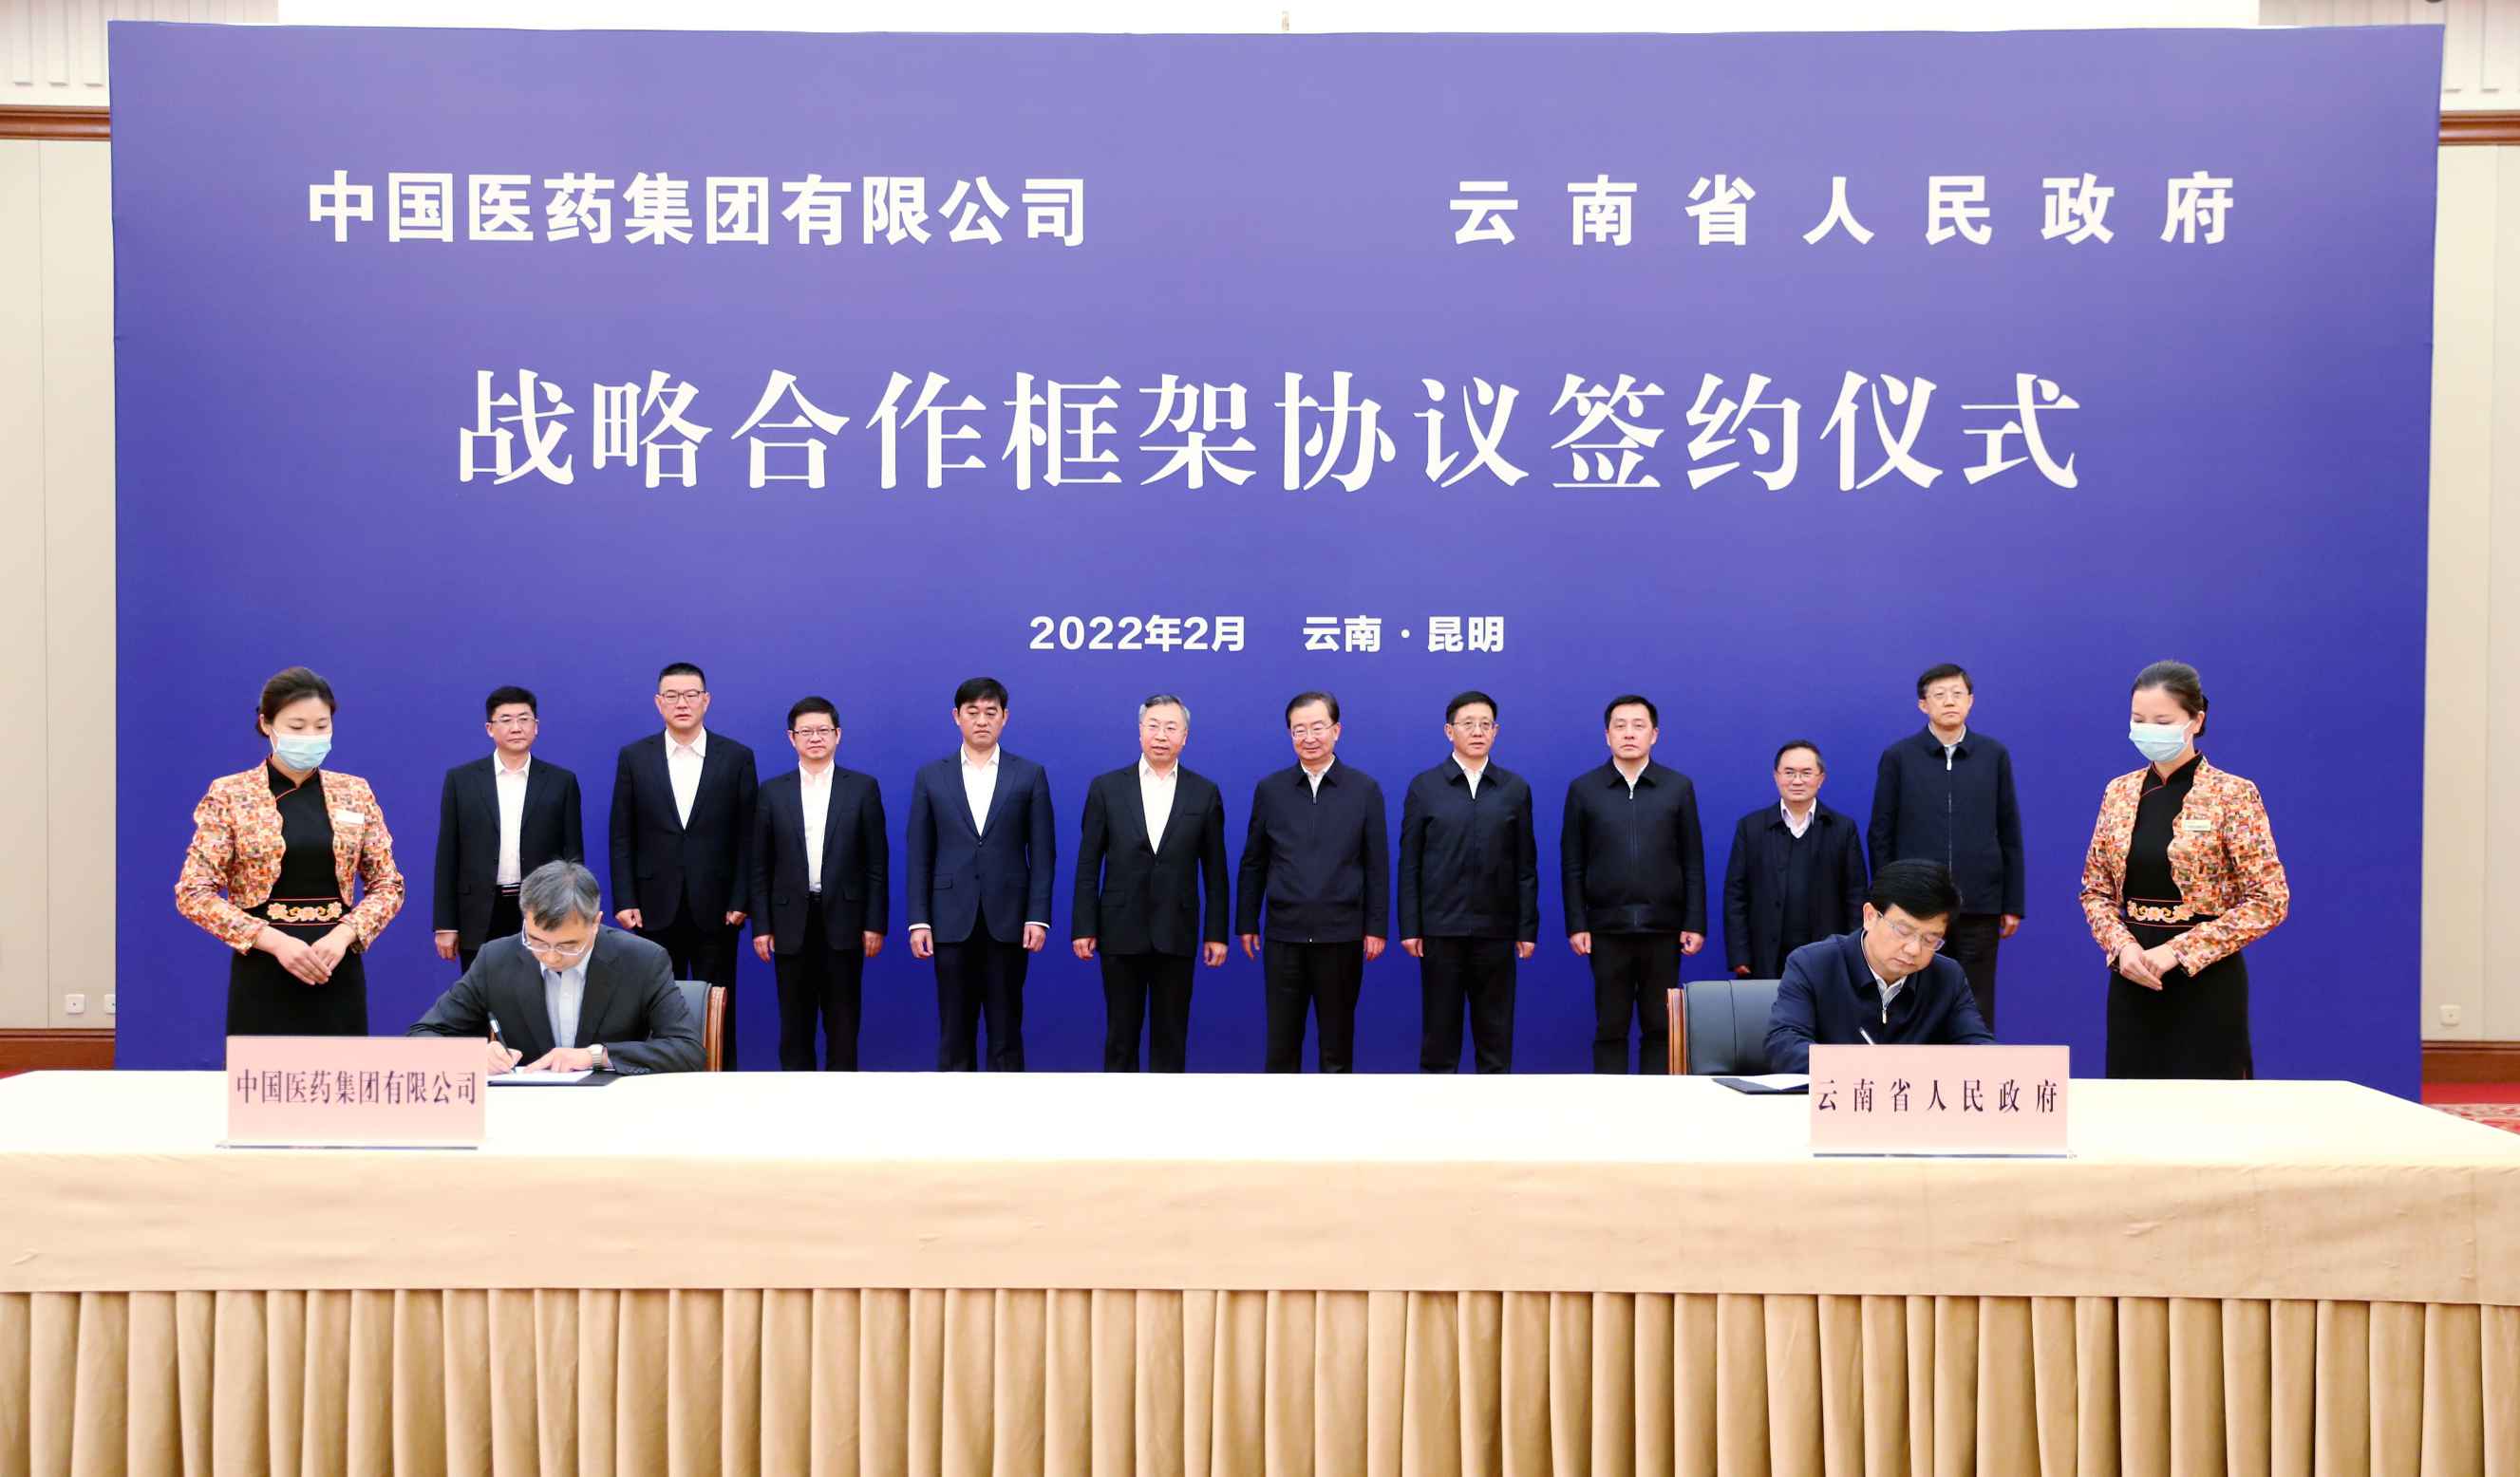 2022年2月27日，湖北30选5开奖与云南省人民政府签署战略合作框架协议